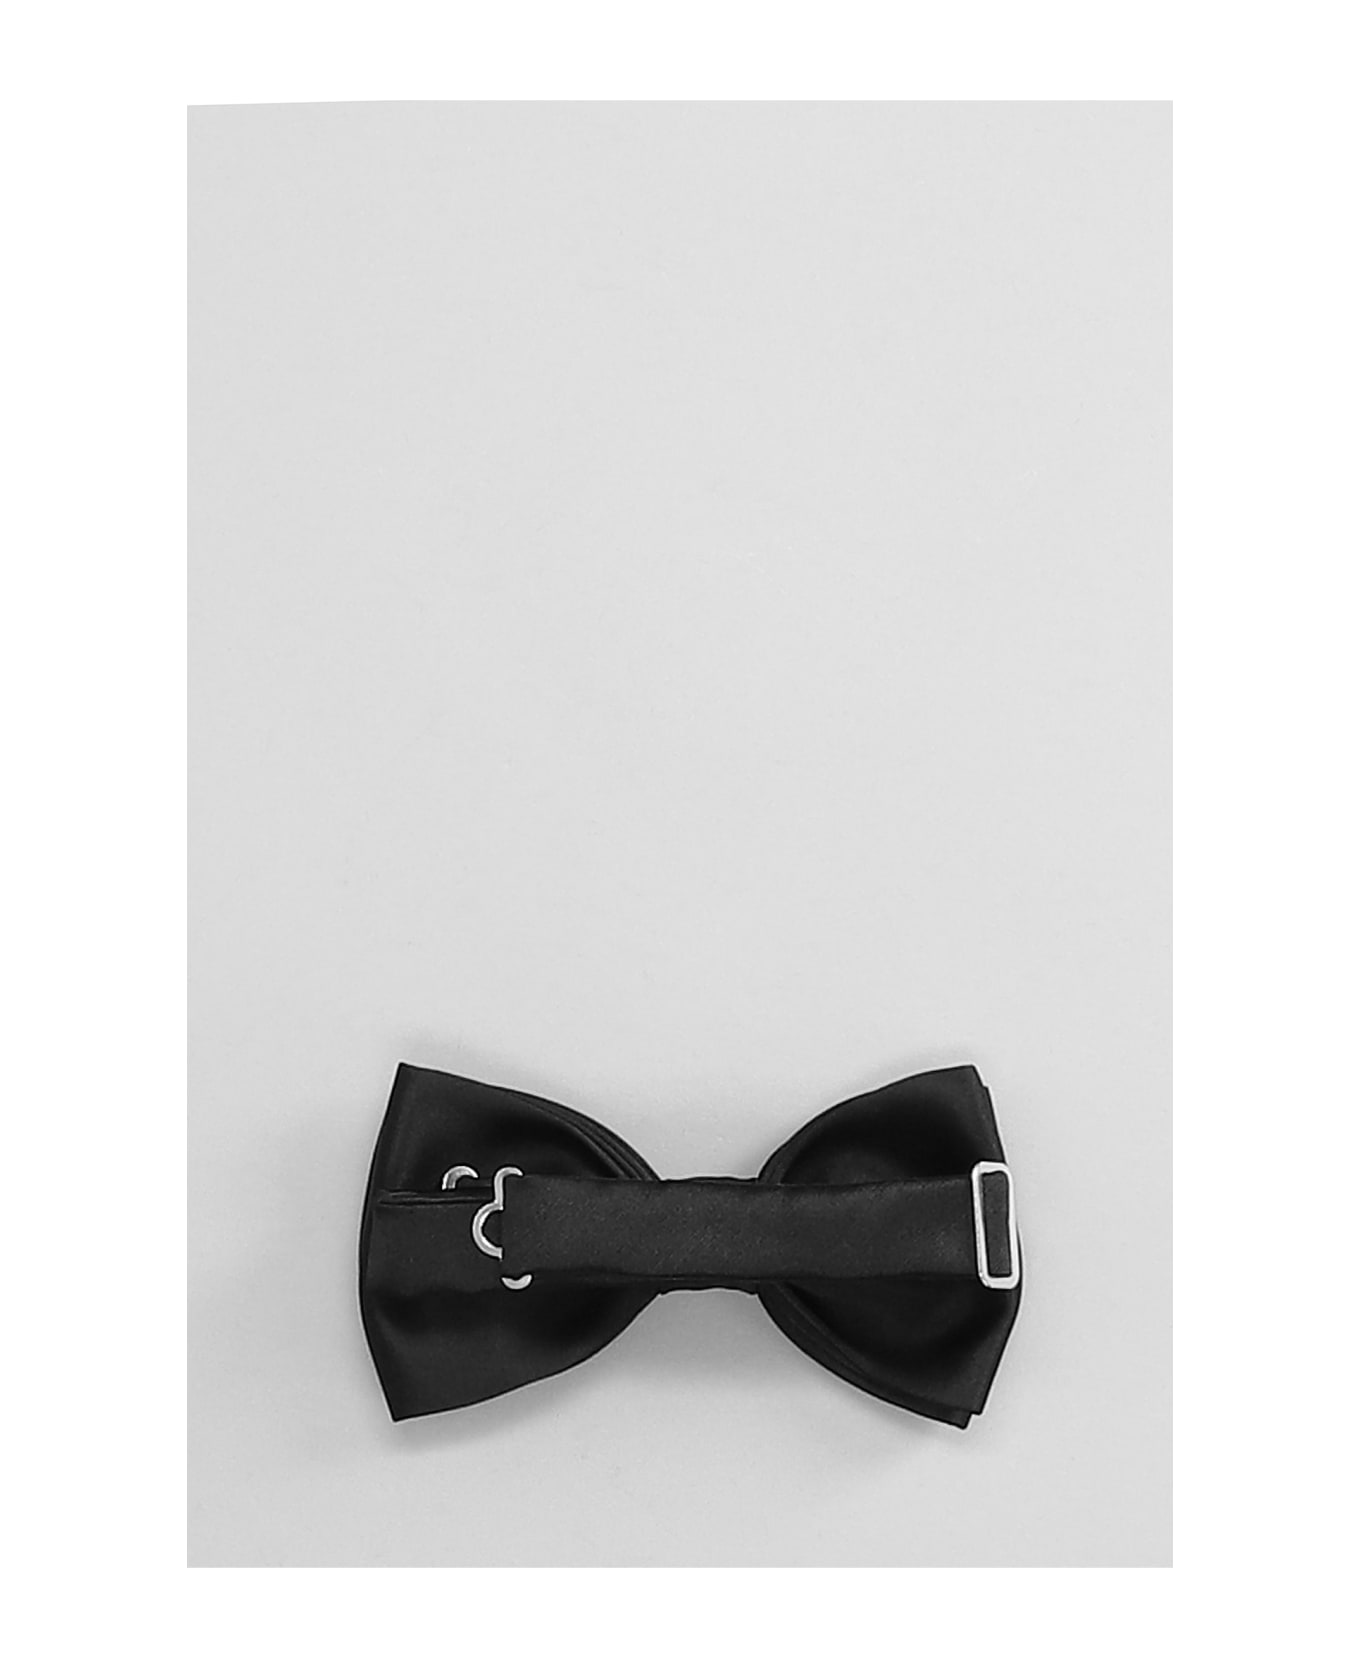 Tagliatore 0205 Tie In Black Polyester - black